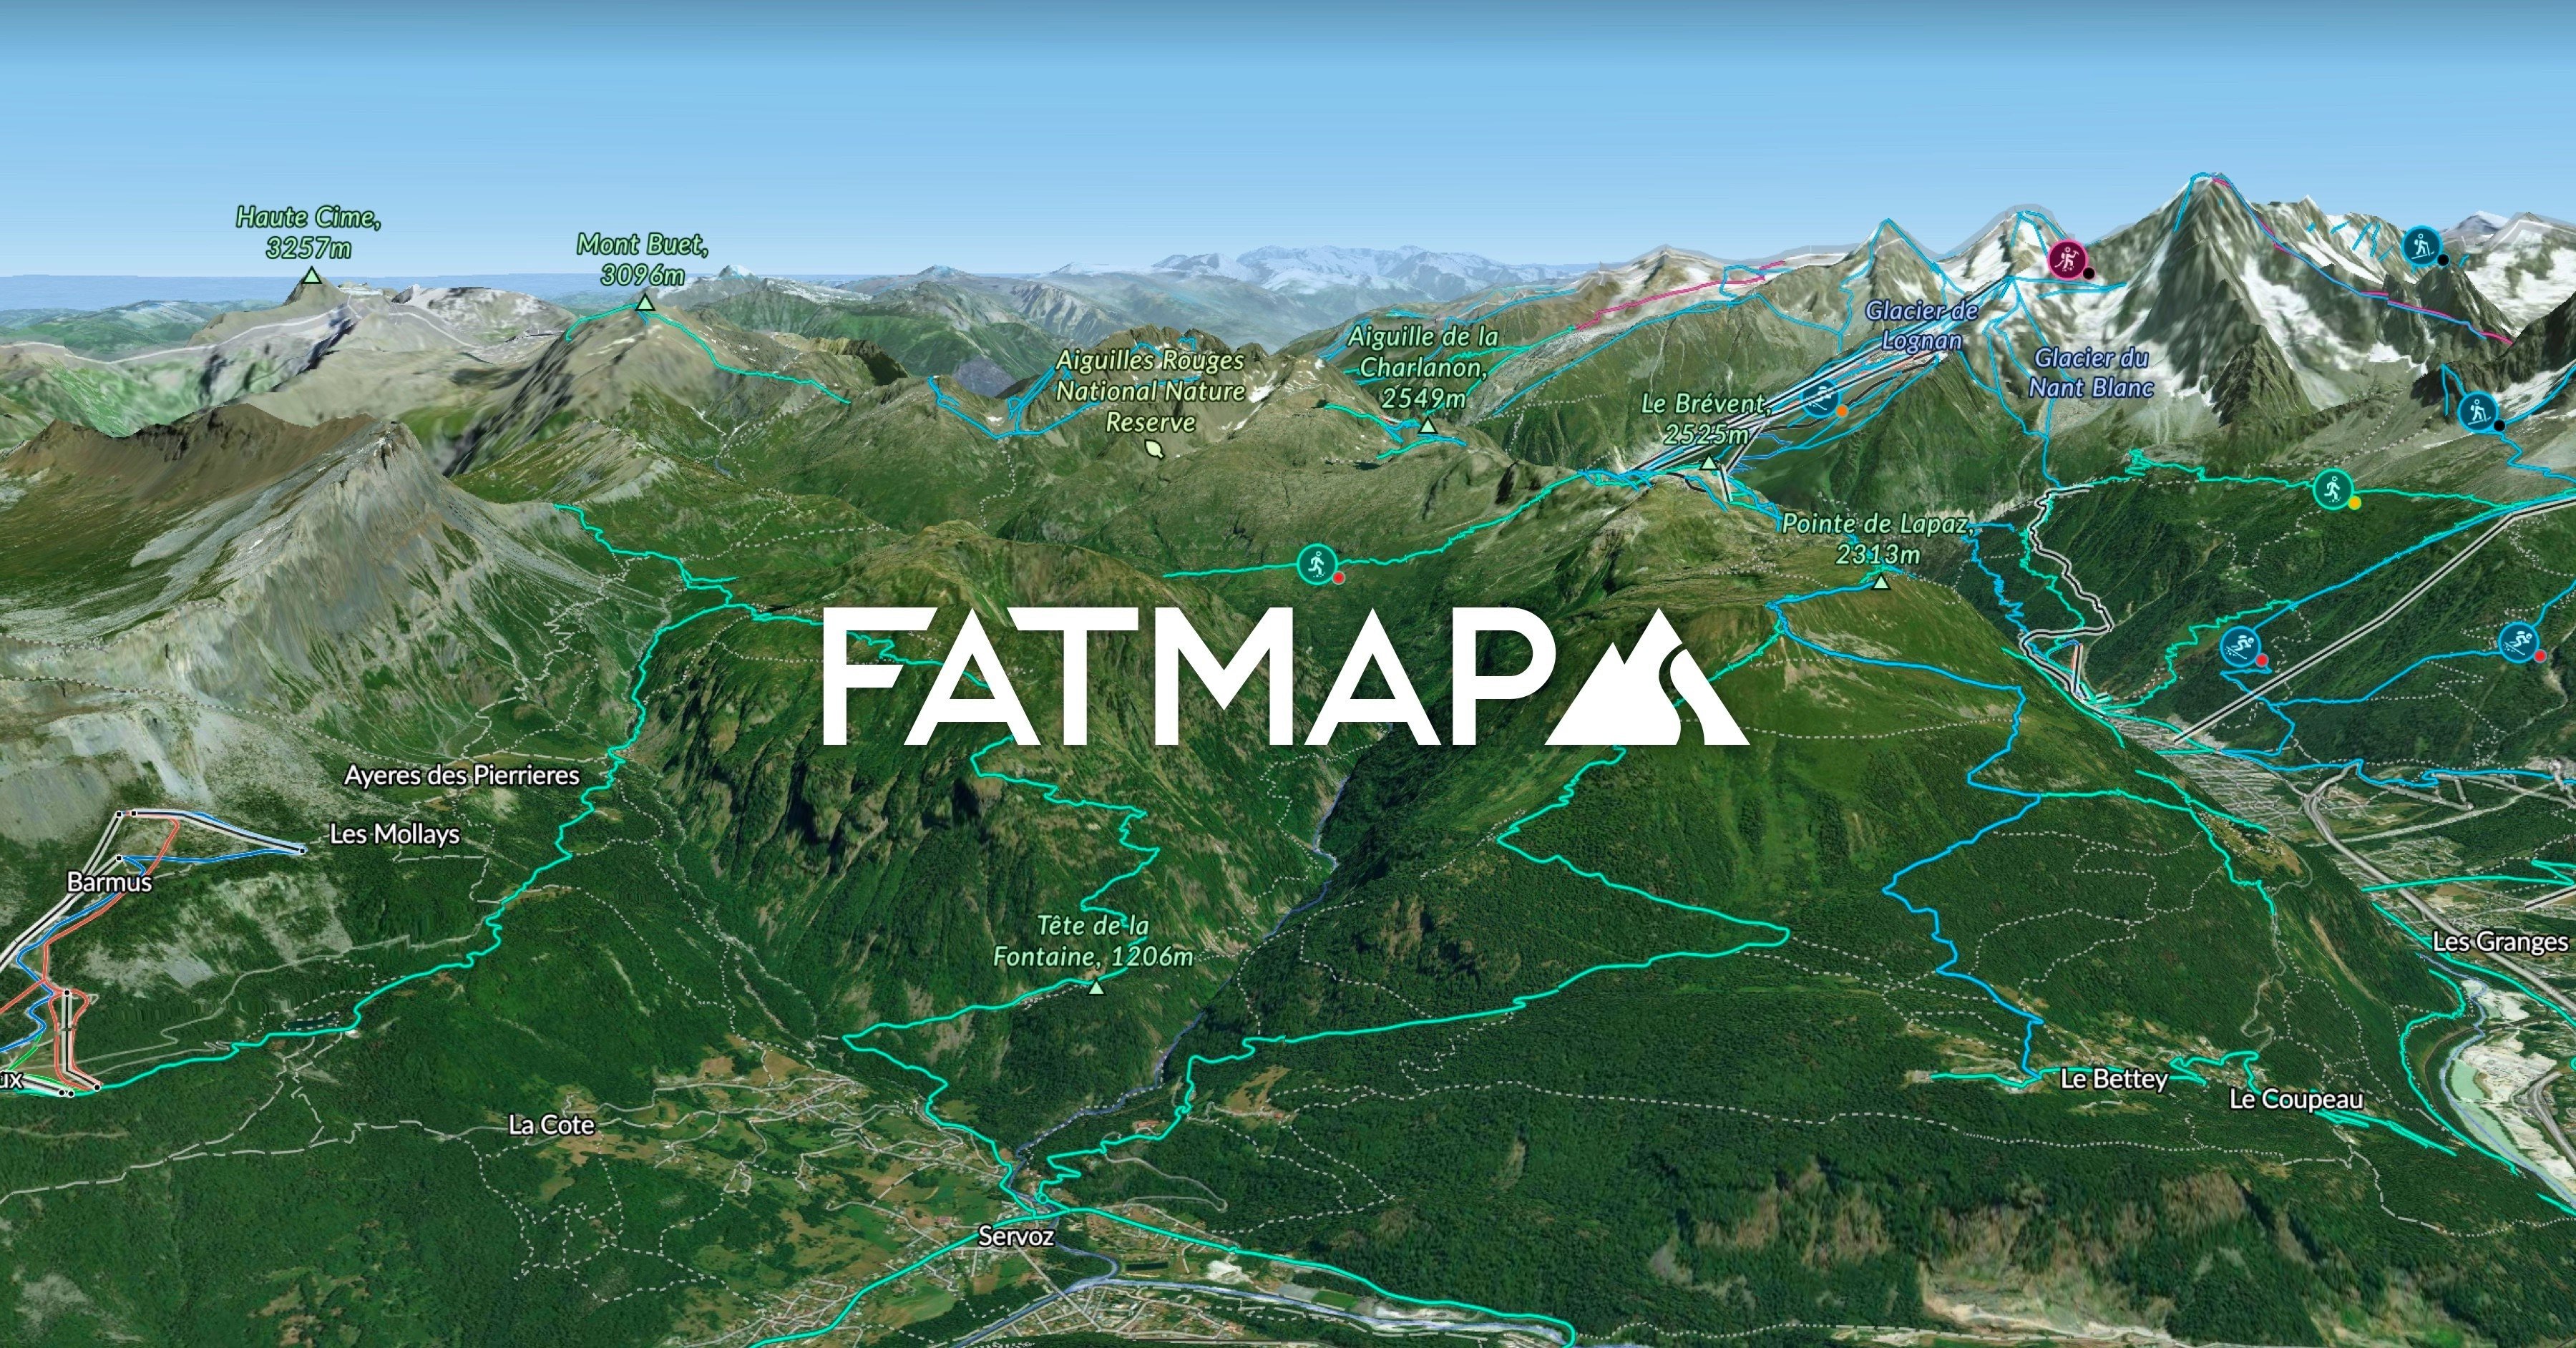 Fatmap logo do sistema